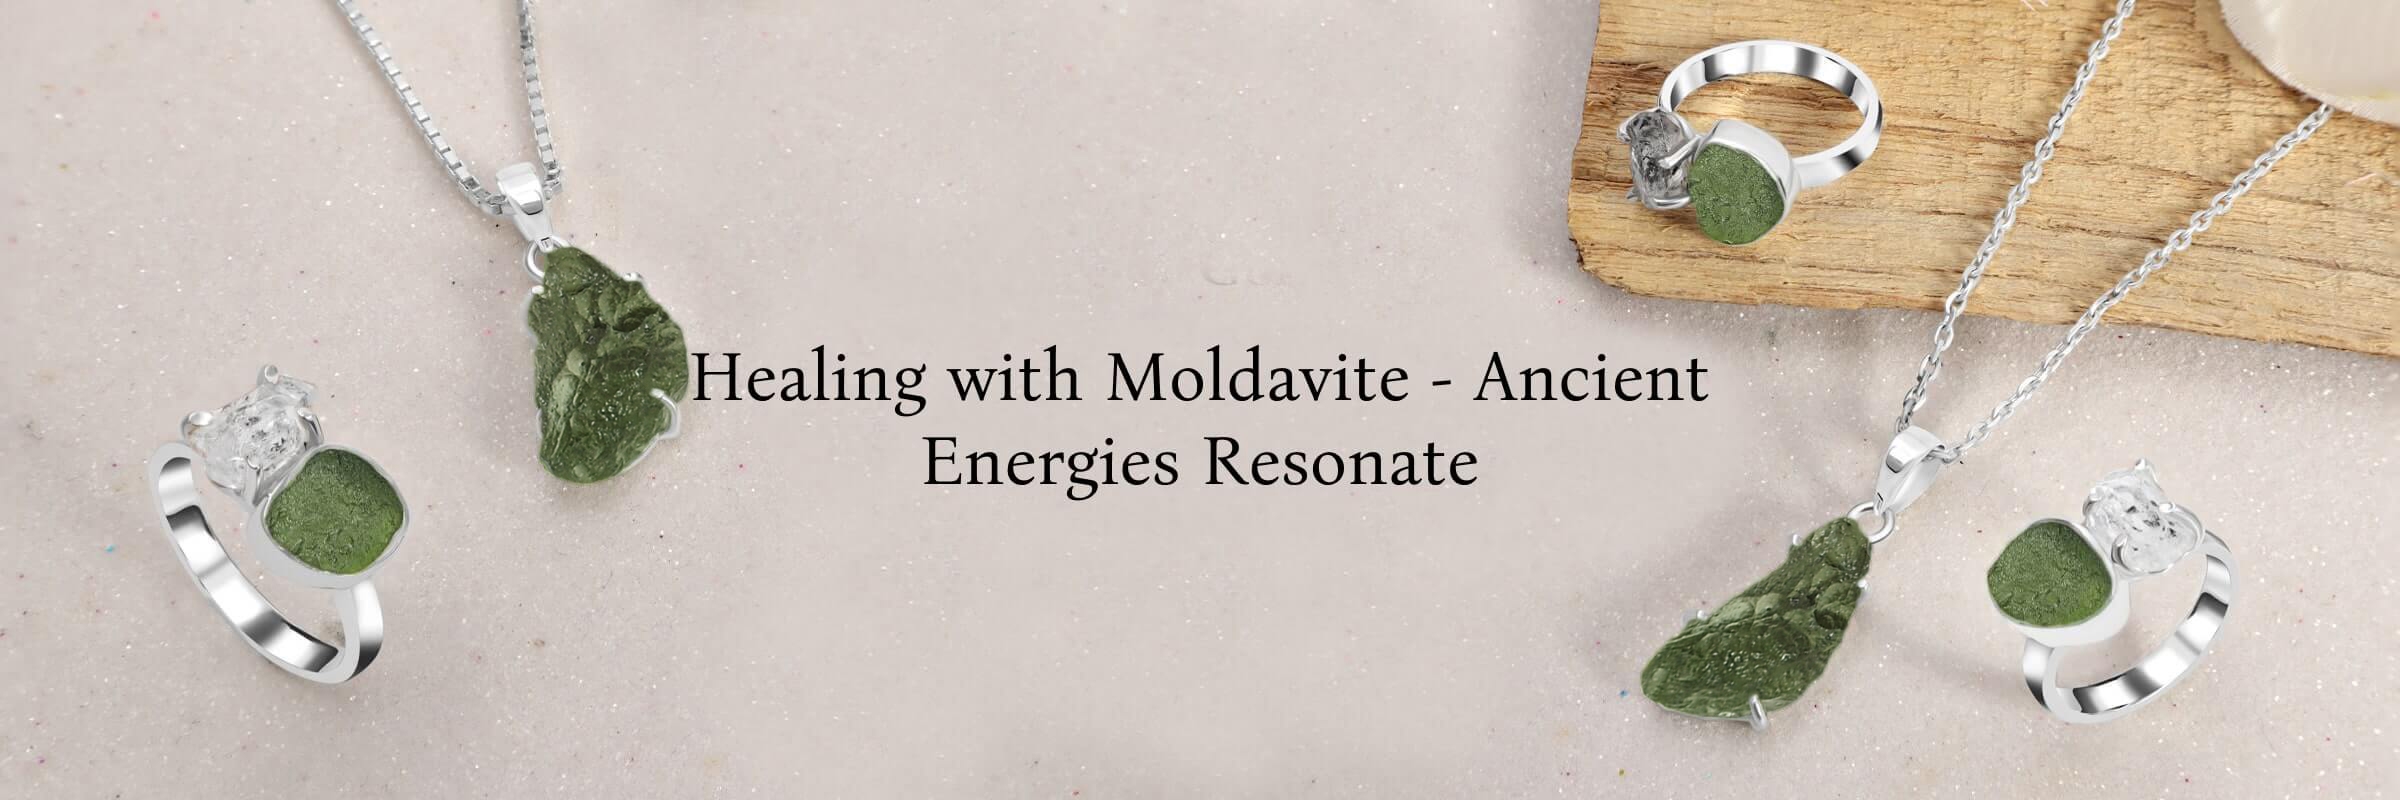 Moldavite stone Healing properties